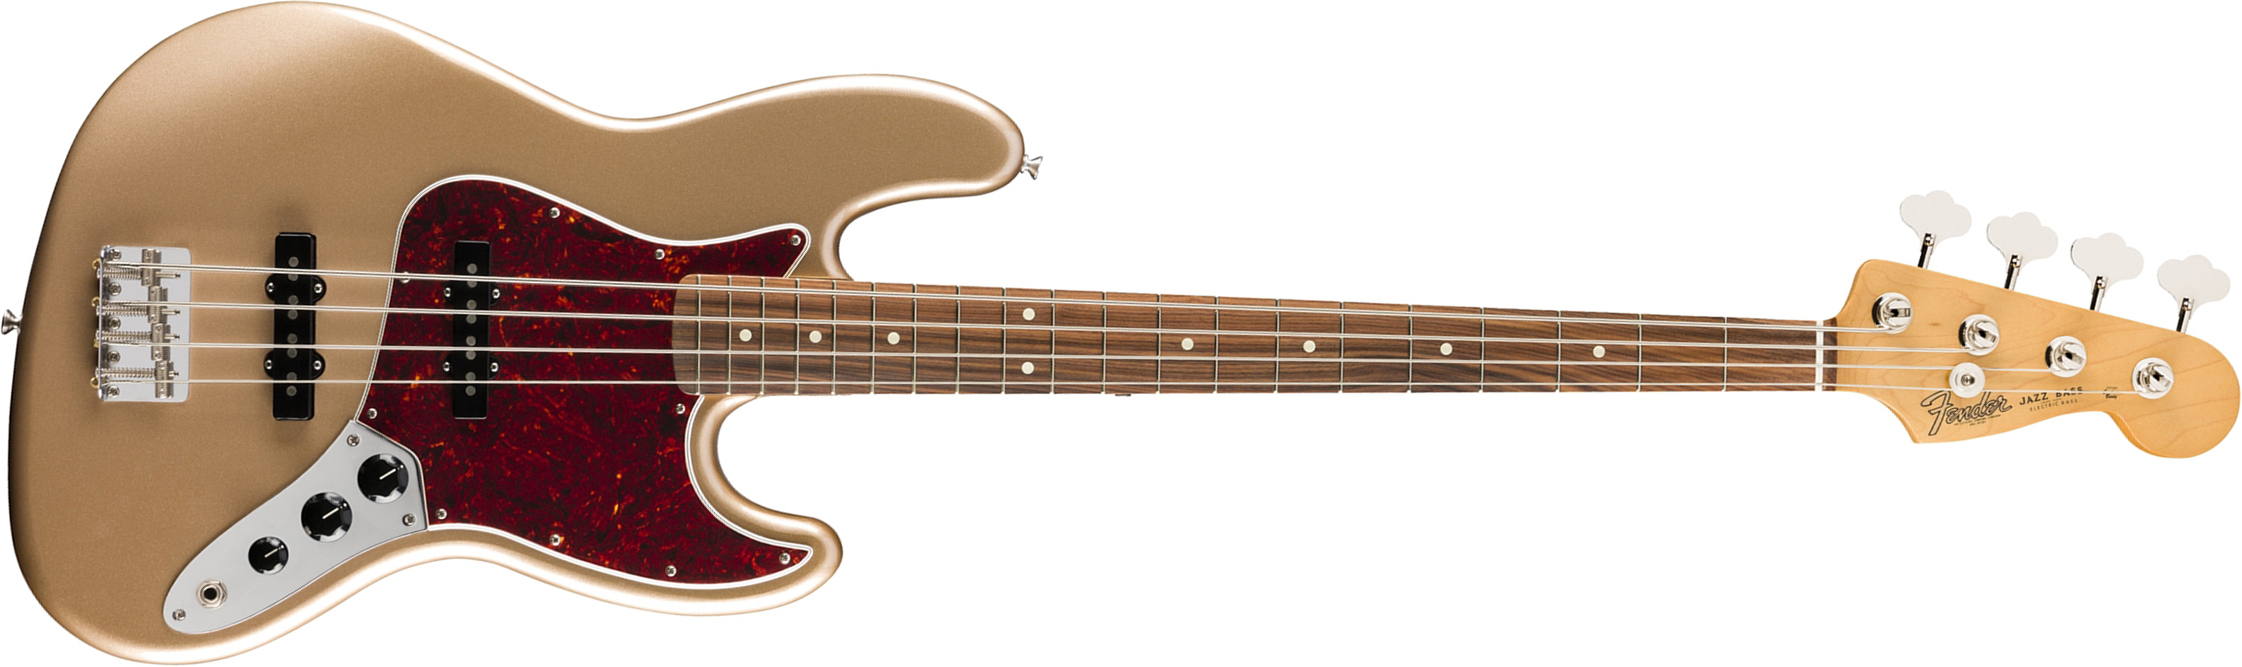 Fender Jazz Bass 60s Vintera Vintage Mex Pf - Firemist Gold - Basse Électrique Solid Body - Main picture